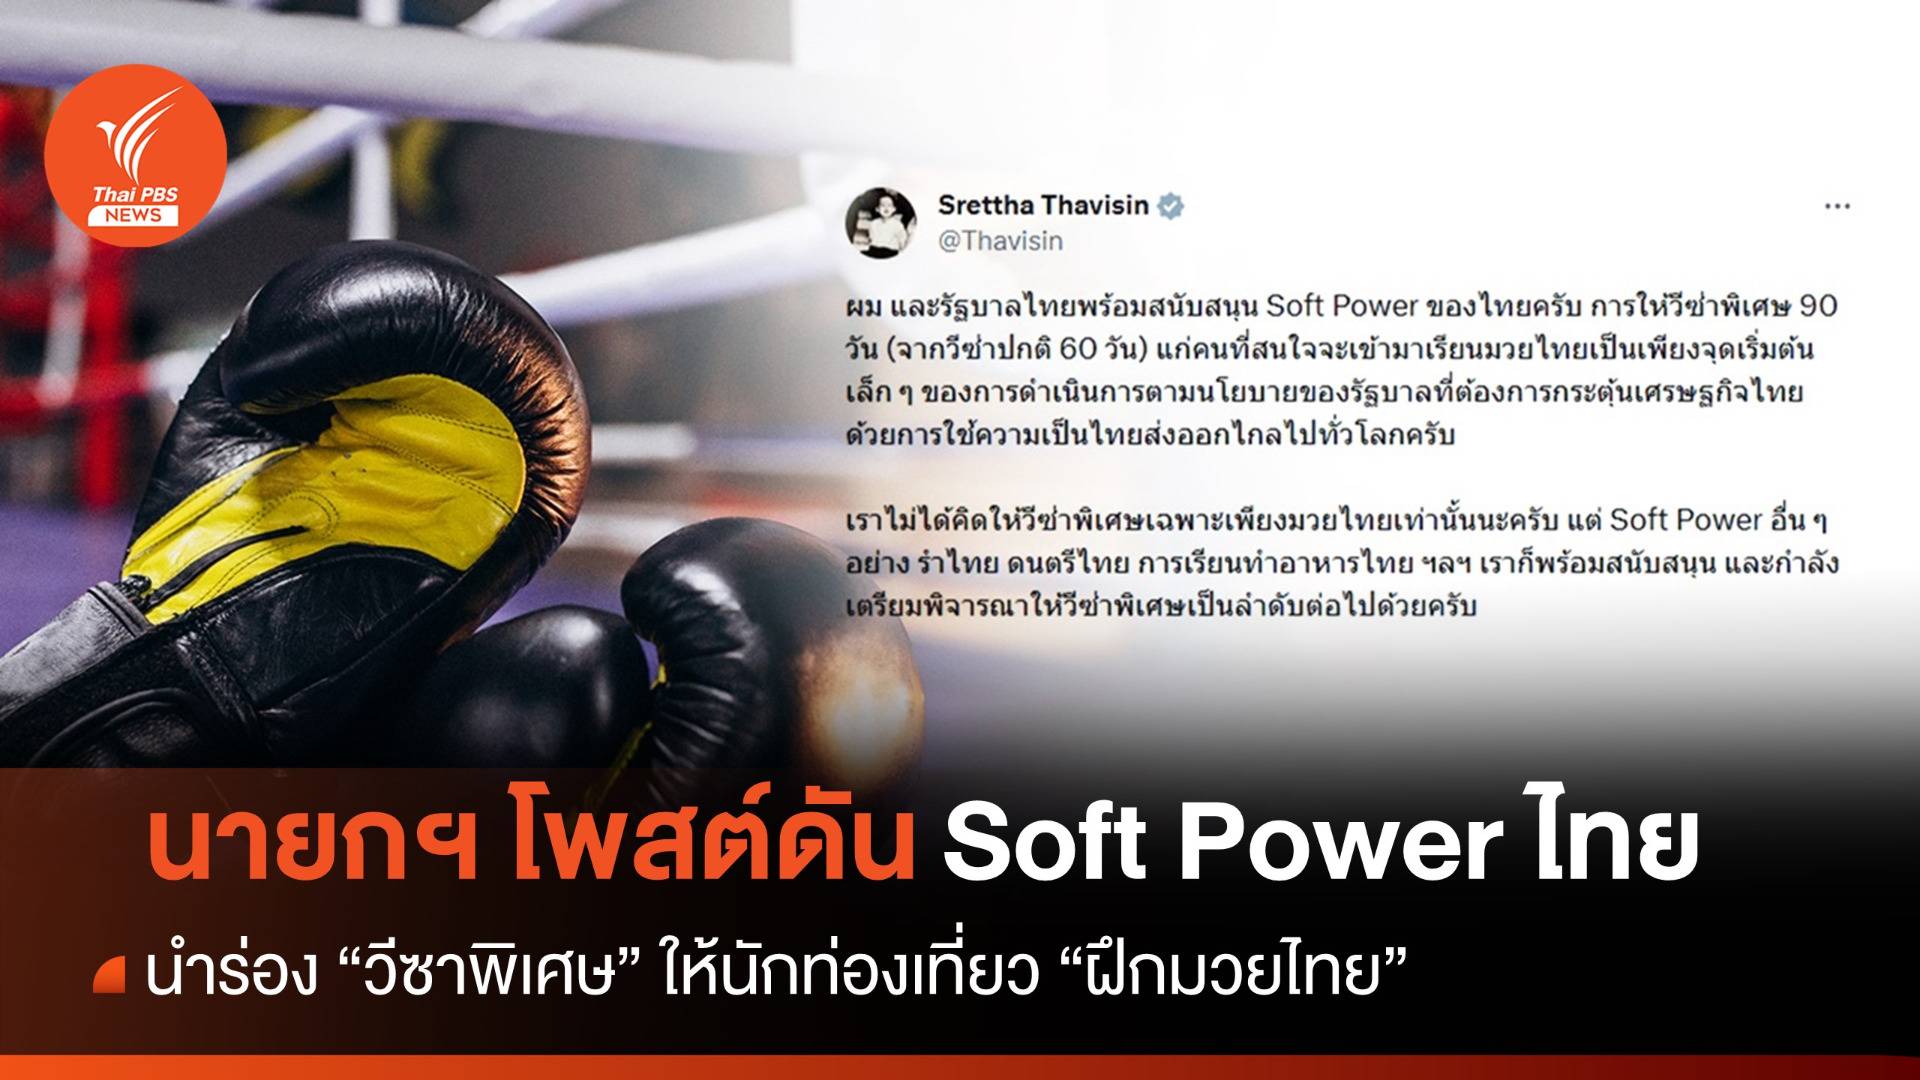 รัฐบาลเตรียมนำร่อง "วีซาพิเศษ" ให้นักท่องเที่ยวสนใจ "ฝึกมวยไทย"